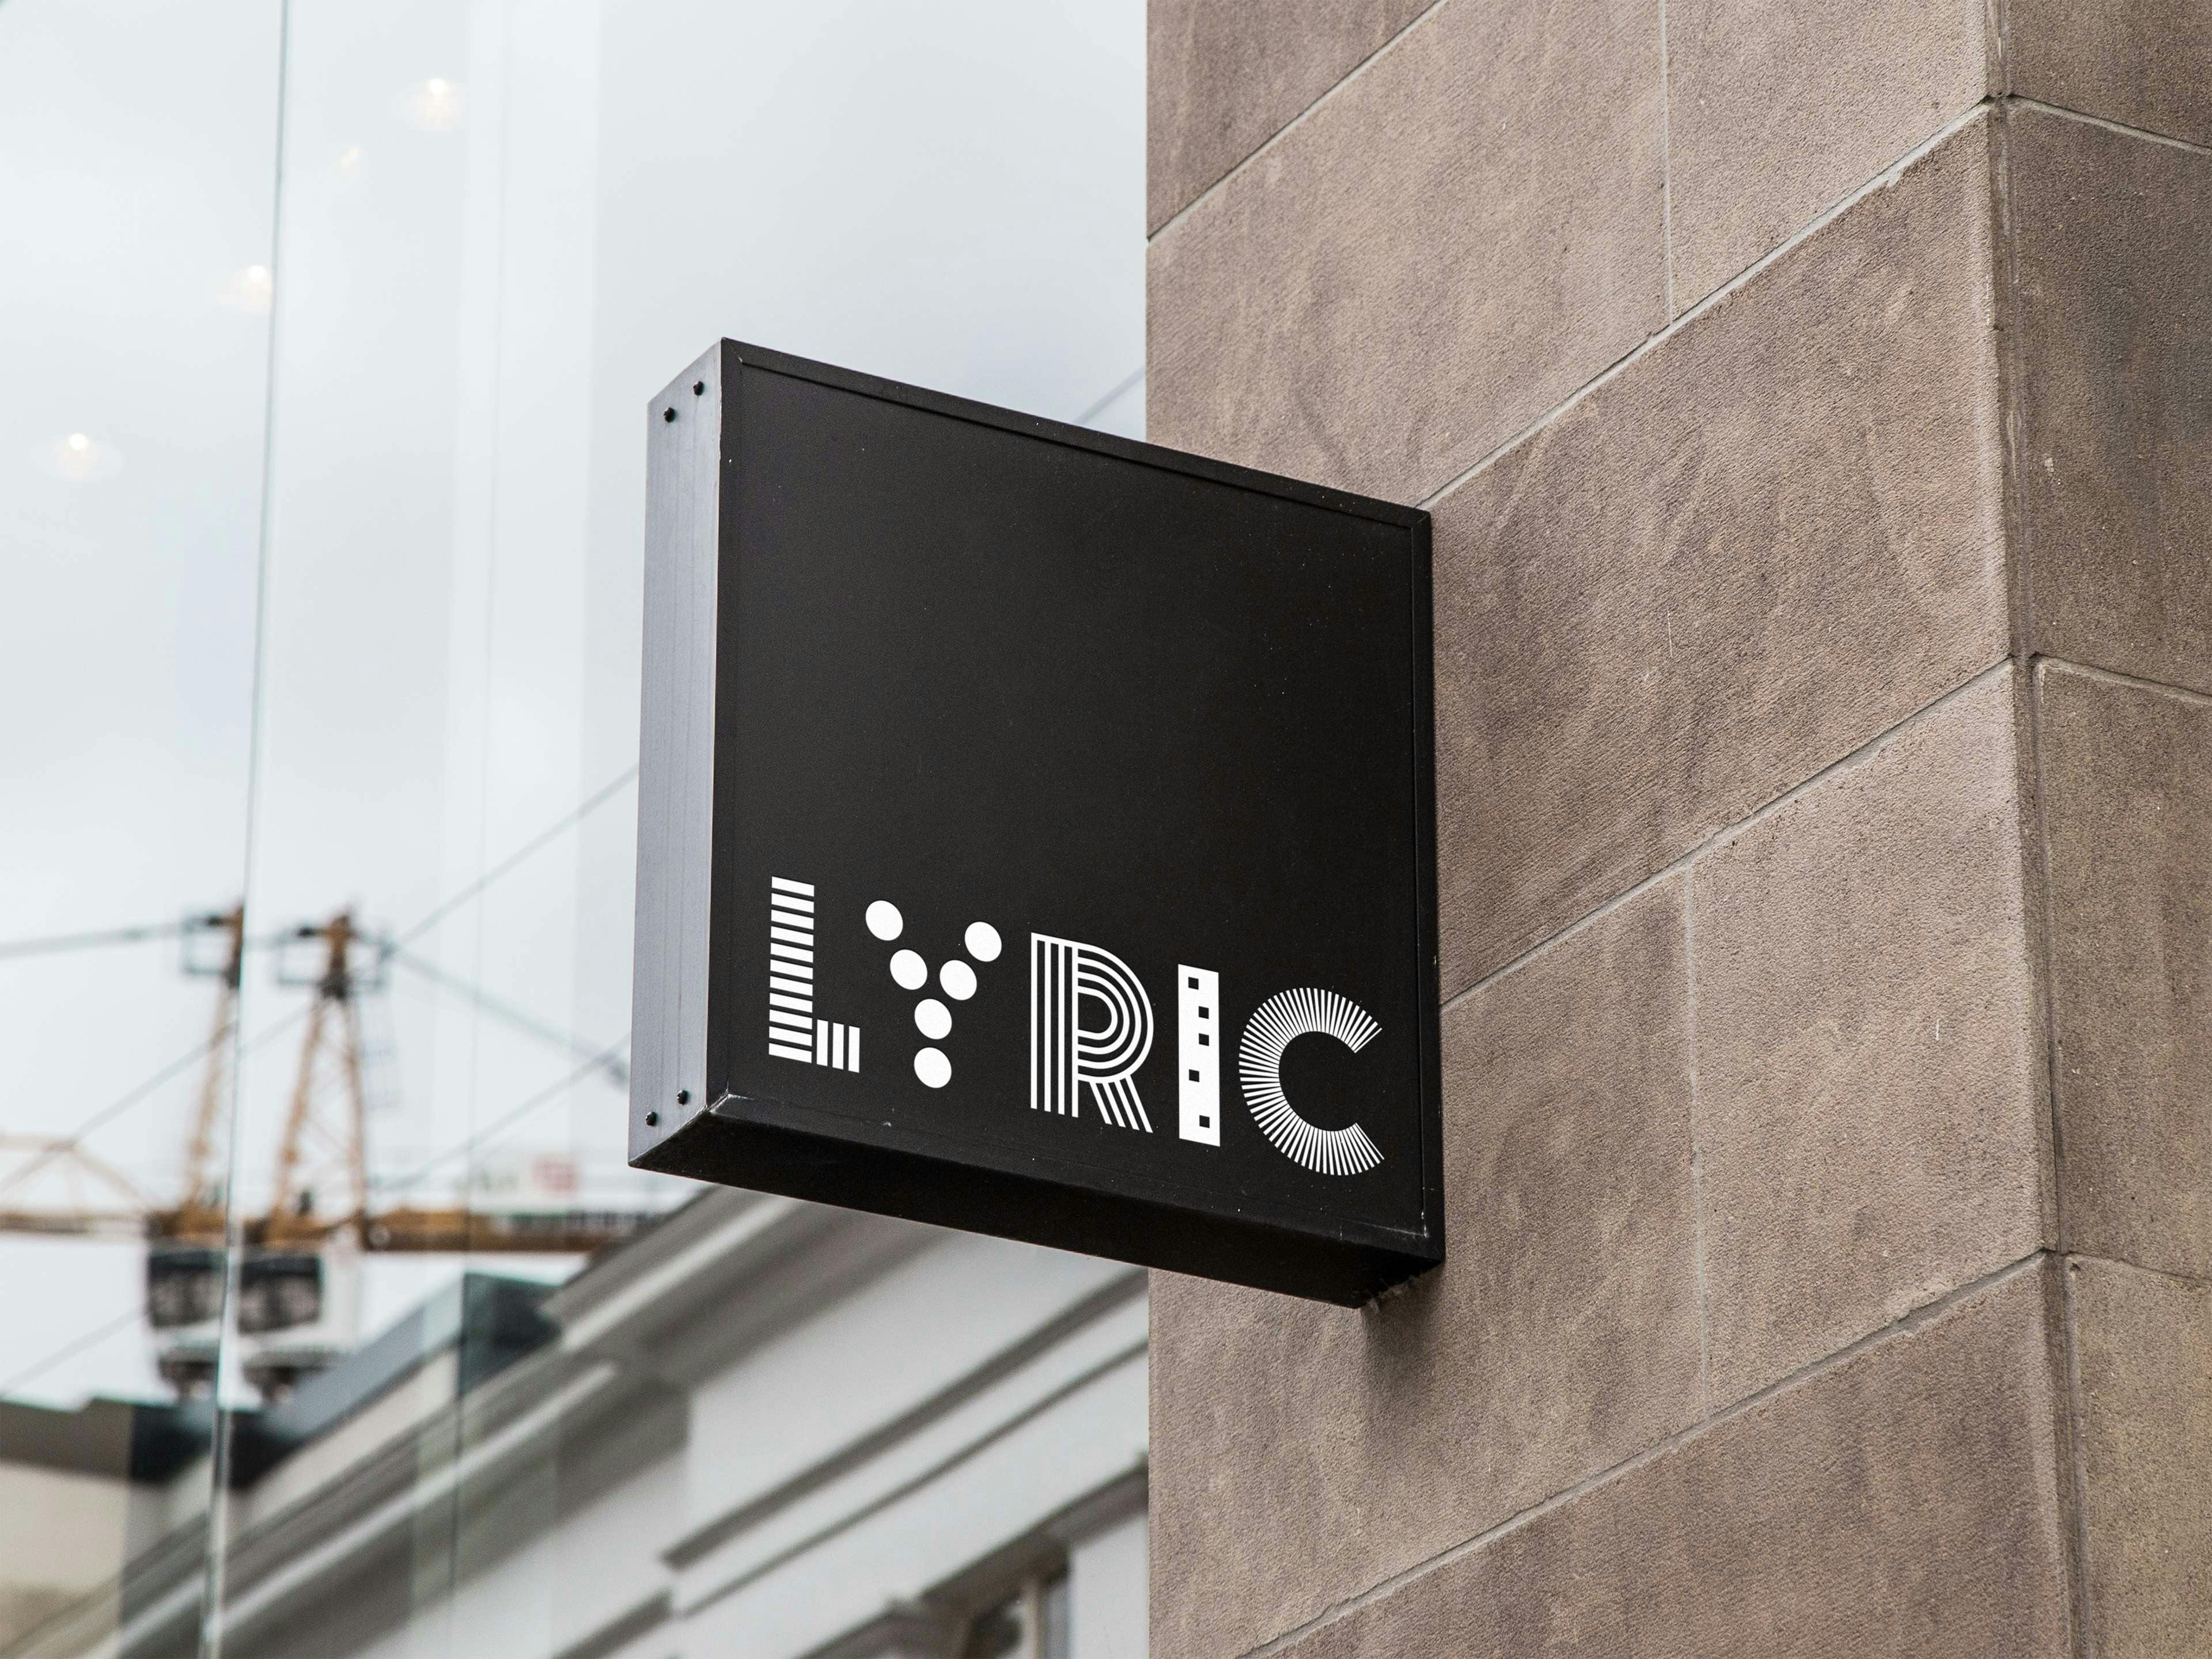 LYRIC signage